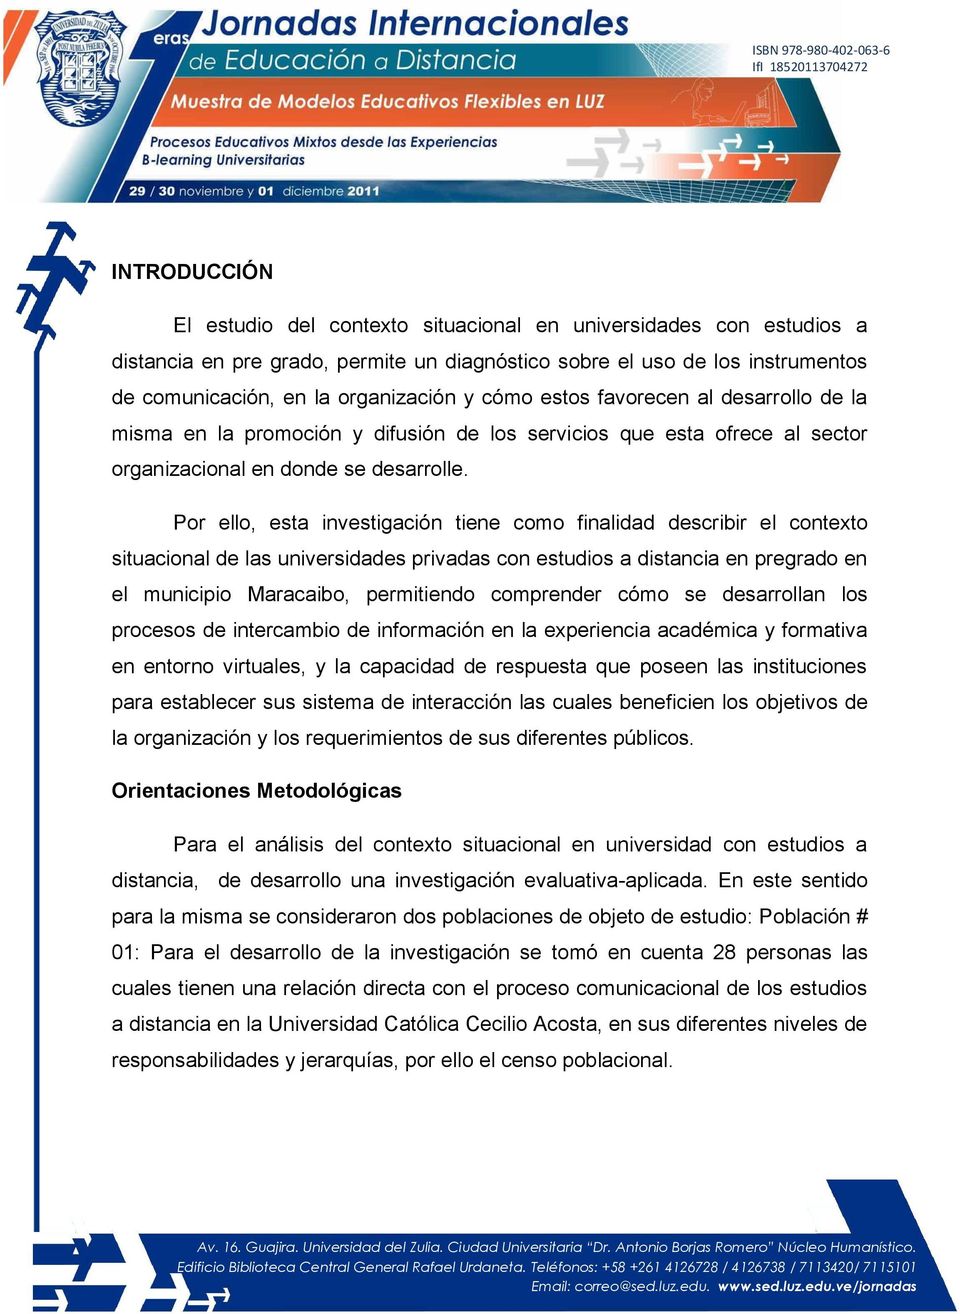 Por ello, esta investigación tiene como finalidad describir el contexto situacional de las universidades privadas con estudios a distancia en pregrado en el municipio Maracaibo, permitiendo